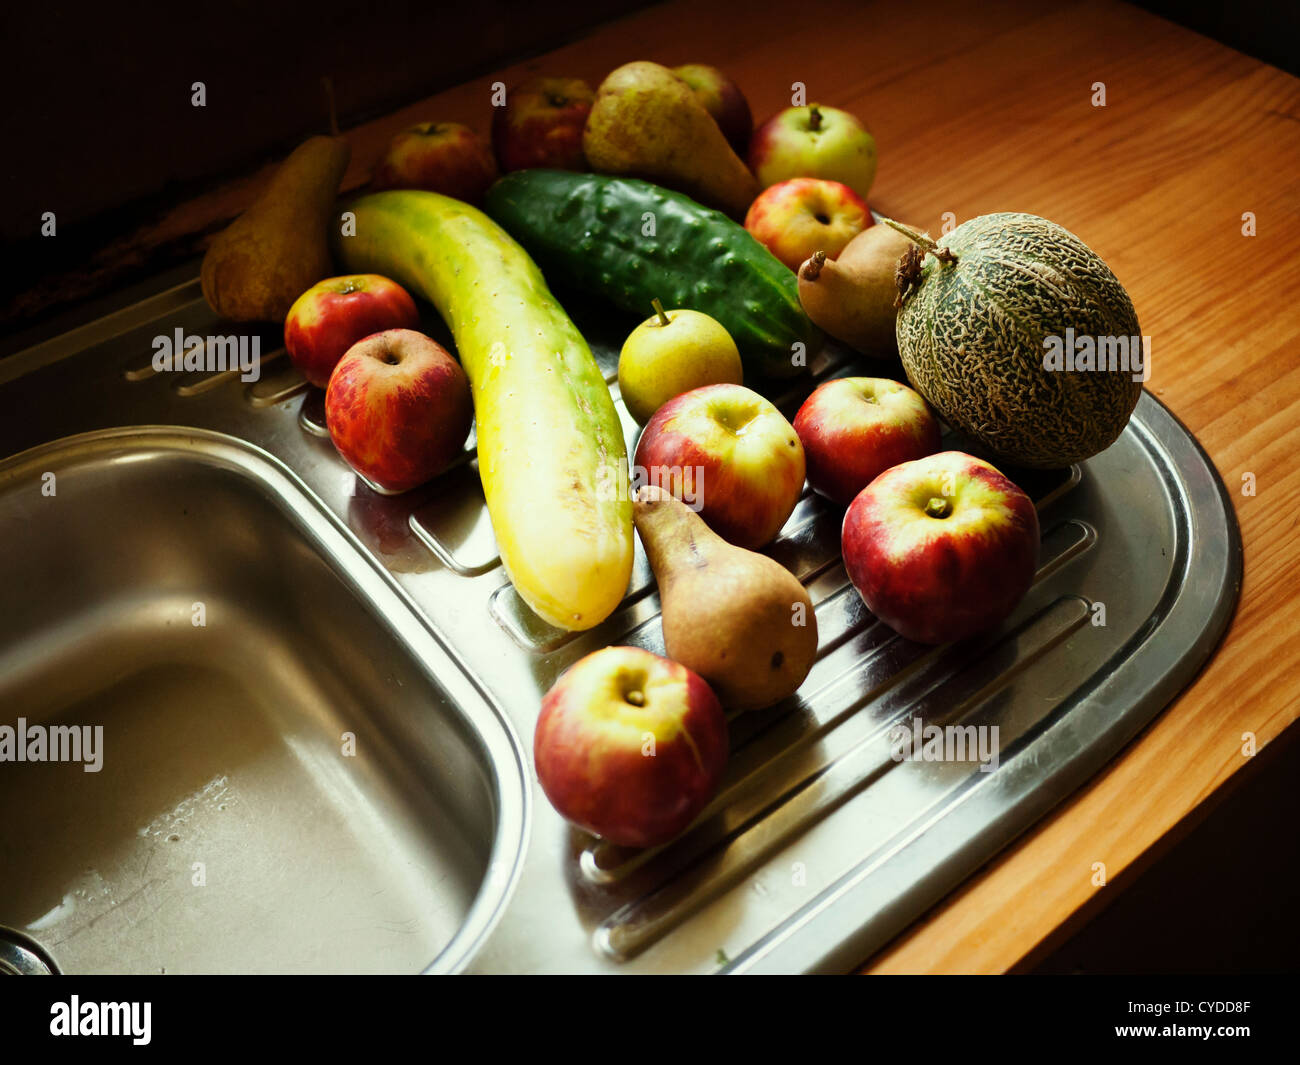 Organic Kollektion: zufällige Auswahl von Obst und Gemüse vom Hausgarten - wenn Sie reif gepflückt, Apfel, Birne, Melone, Gurke Stockfoto